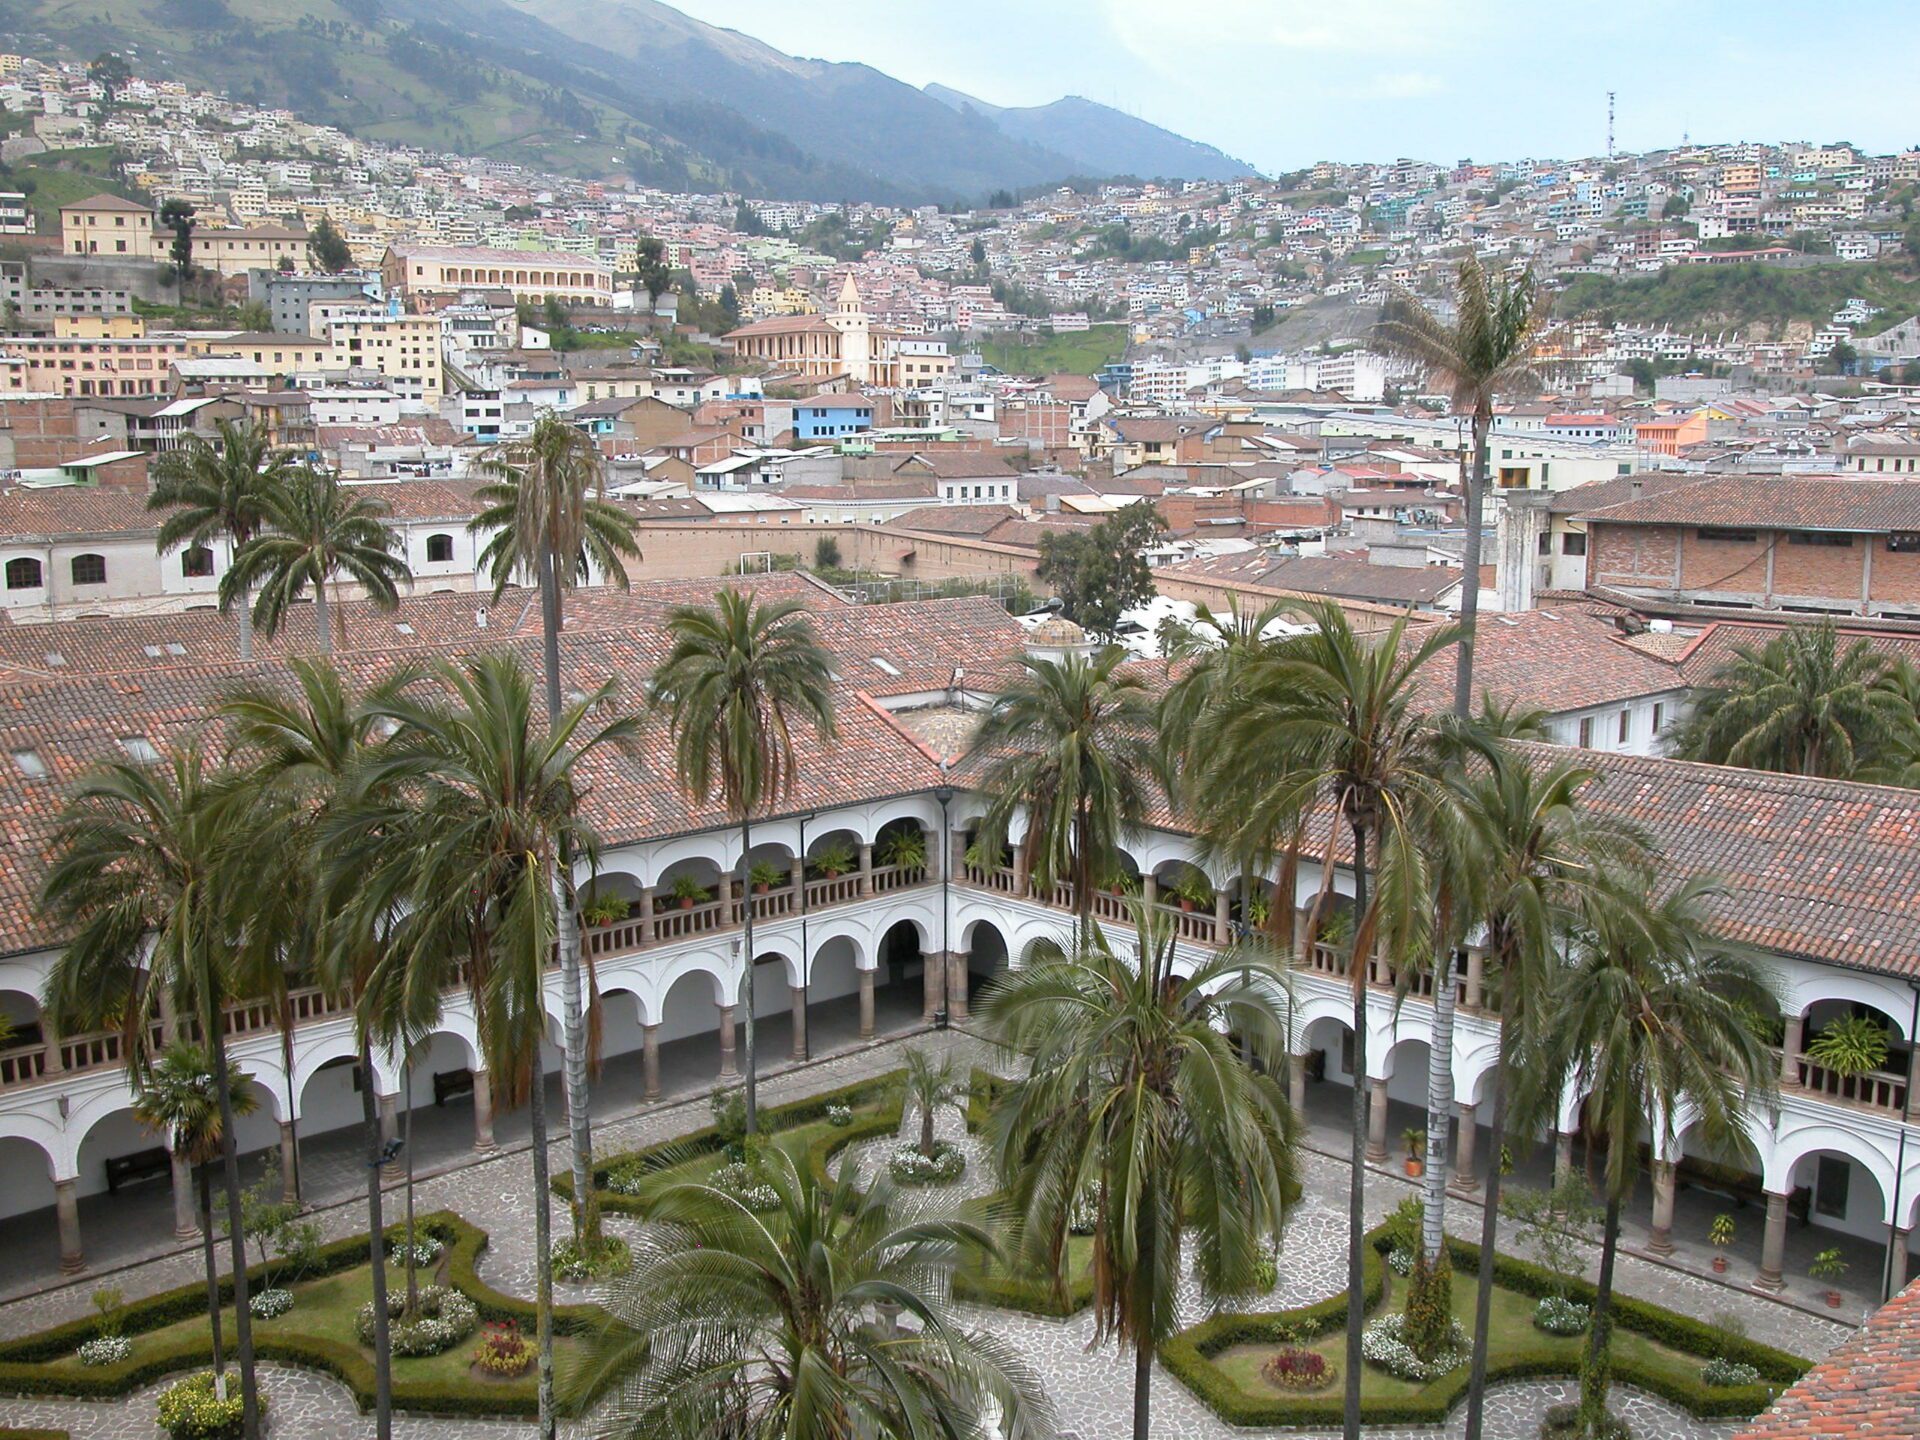 Convento de San Francisco in Quito